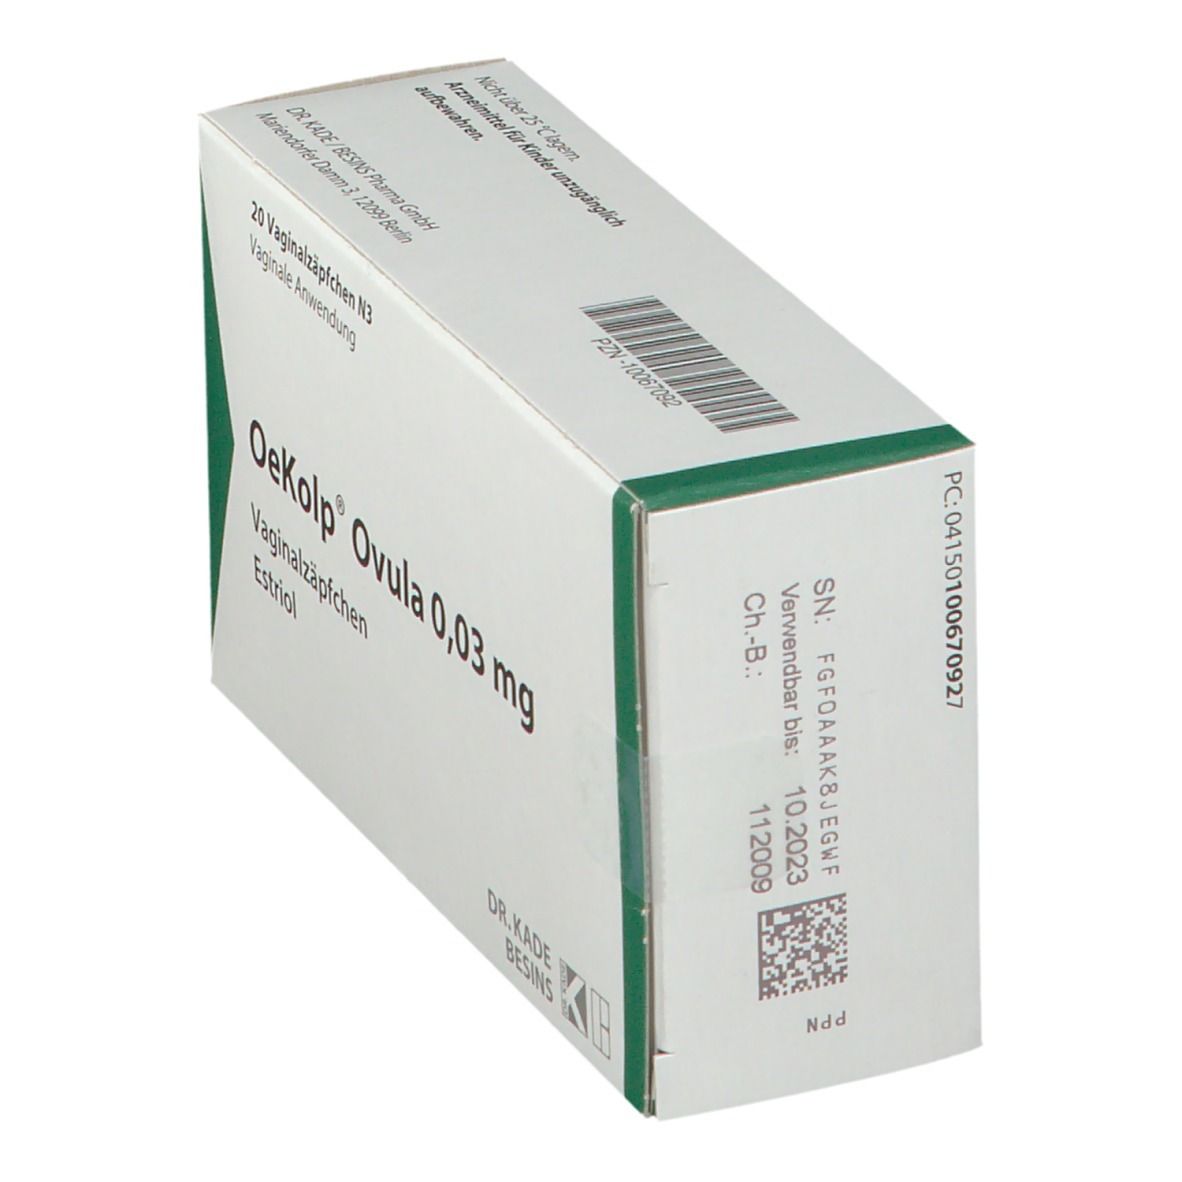 OeKolp® Ovula 0,03 mg